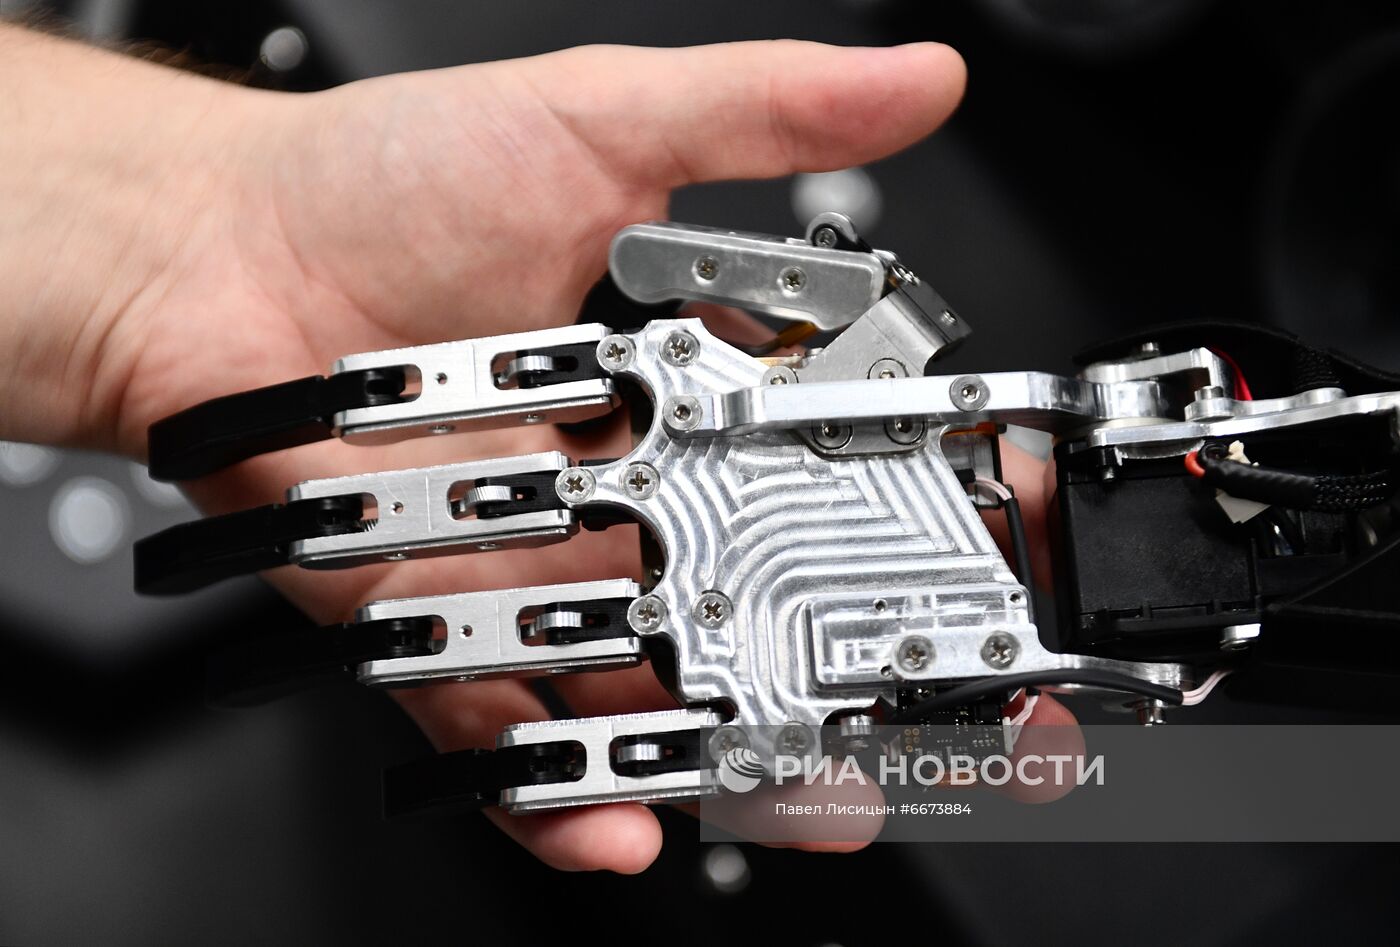 Изготовление роботов компанией "Промобот" в Перми